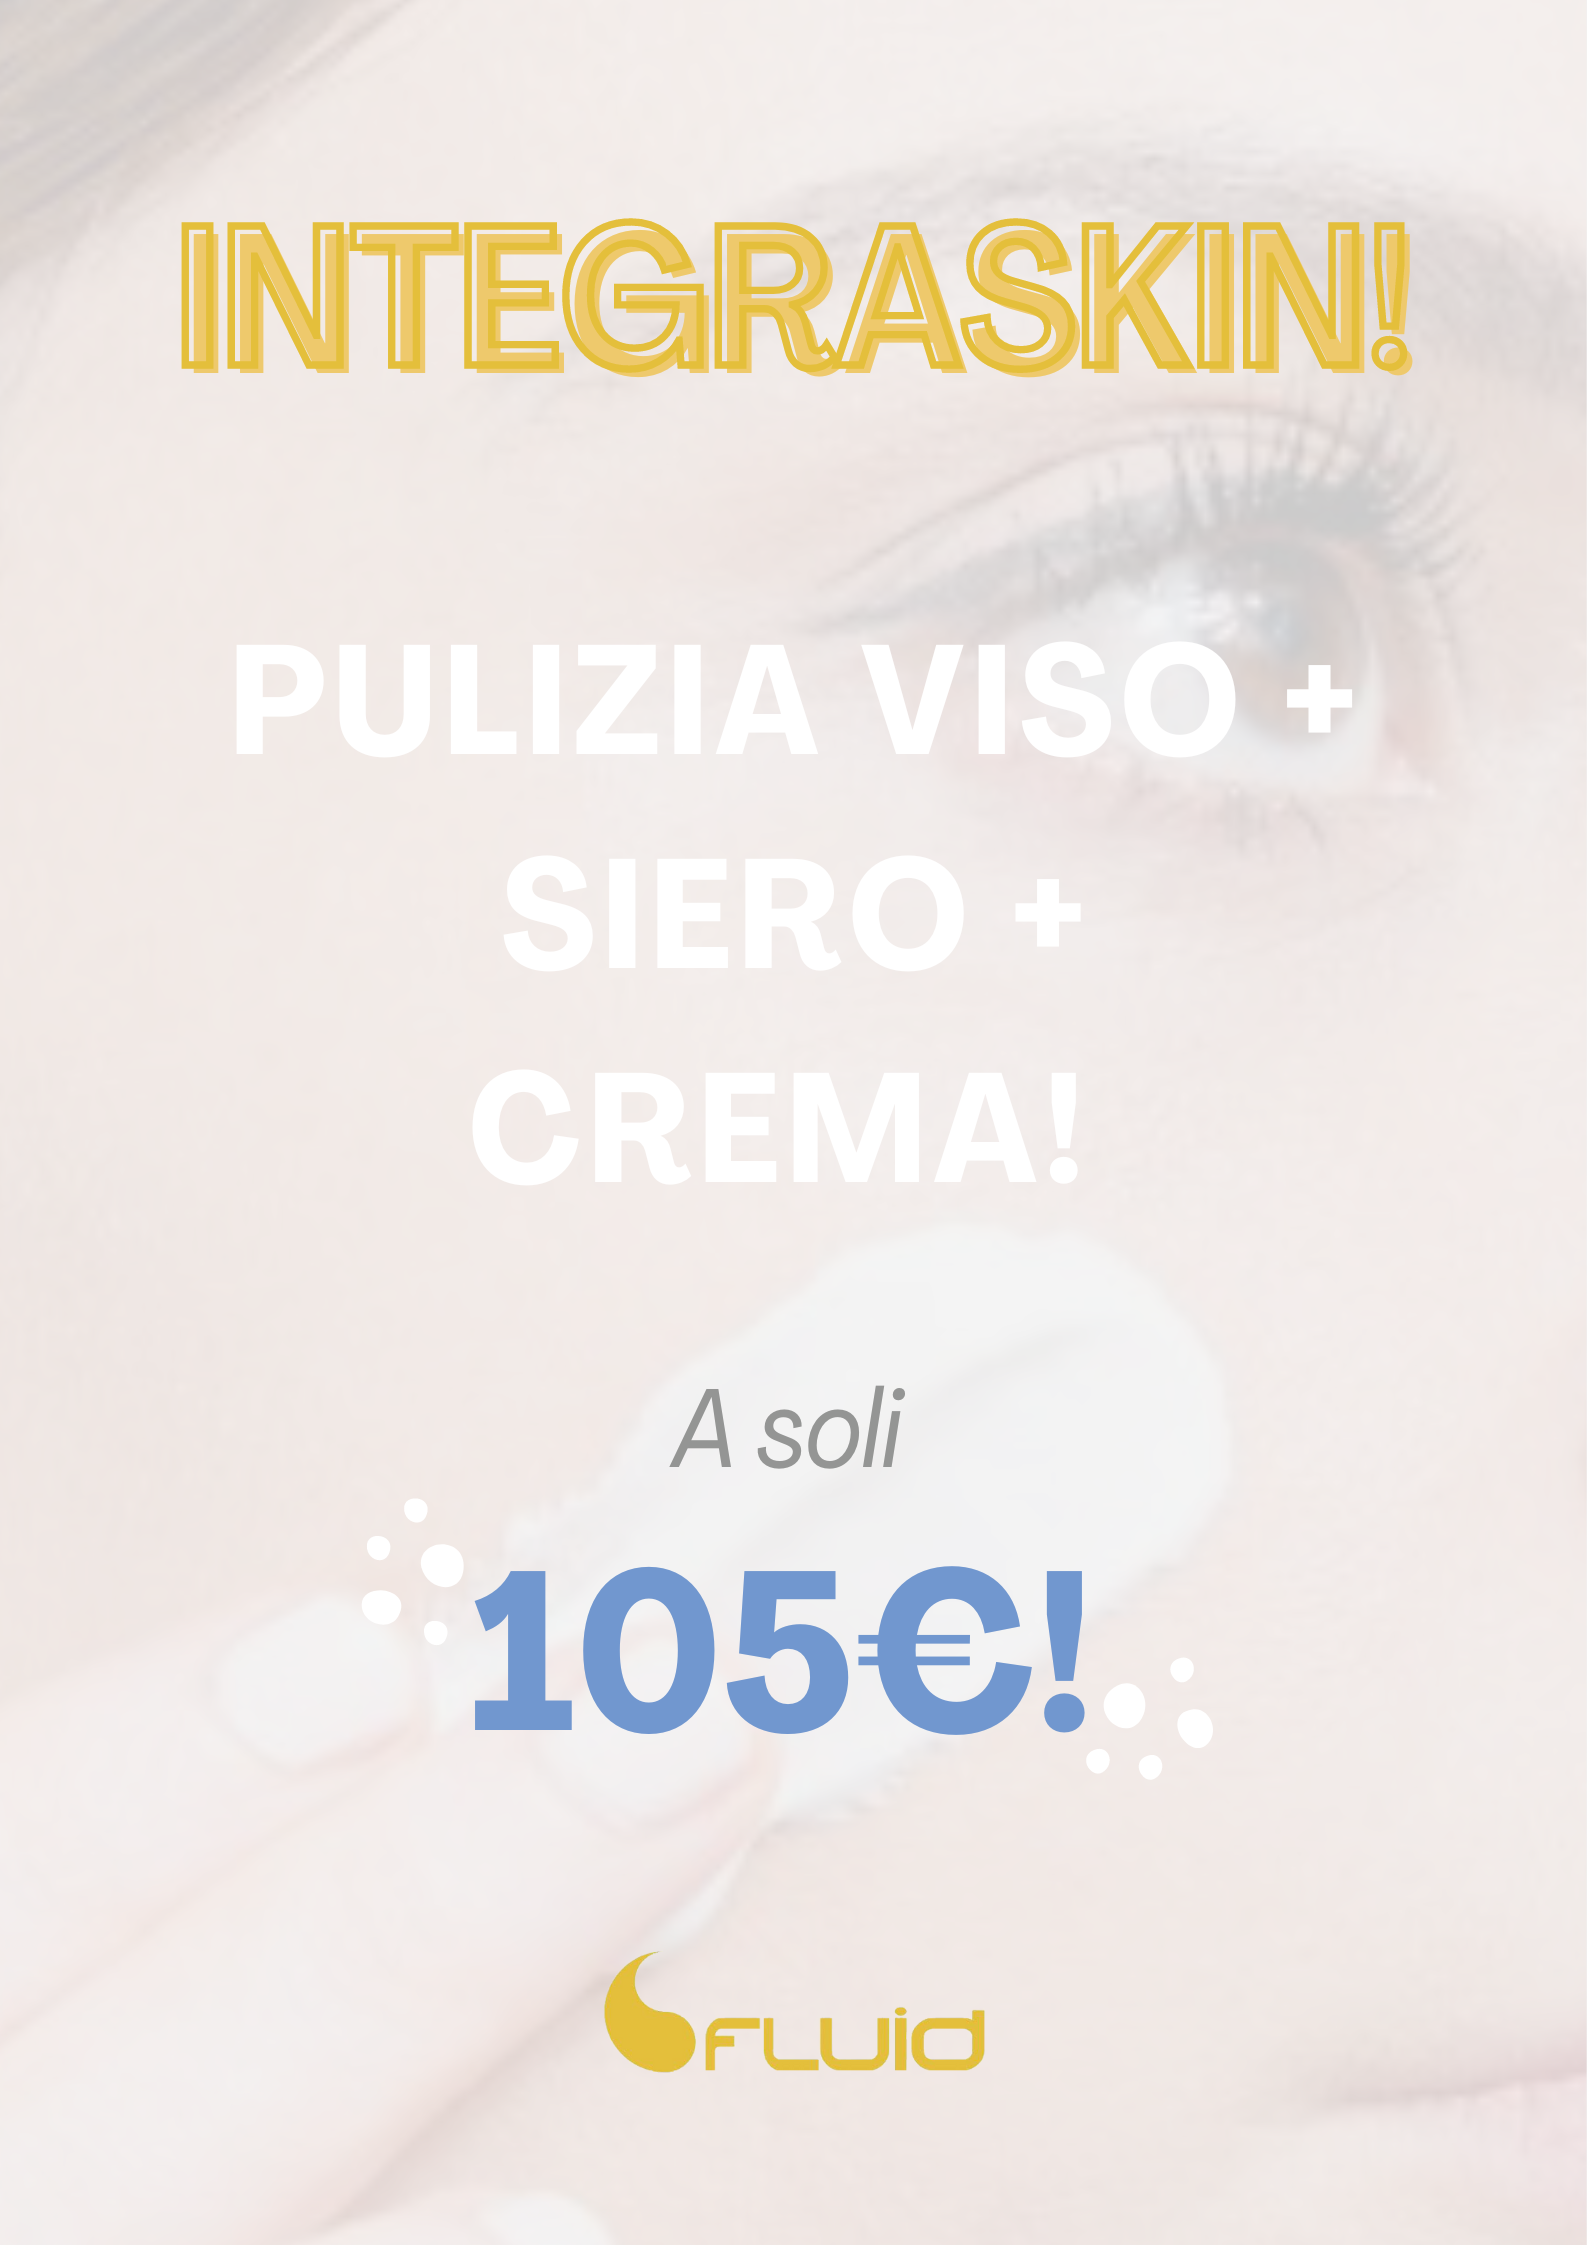 pulizia del viso integraskin promozione 105€ con siero e crema